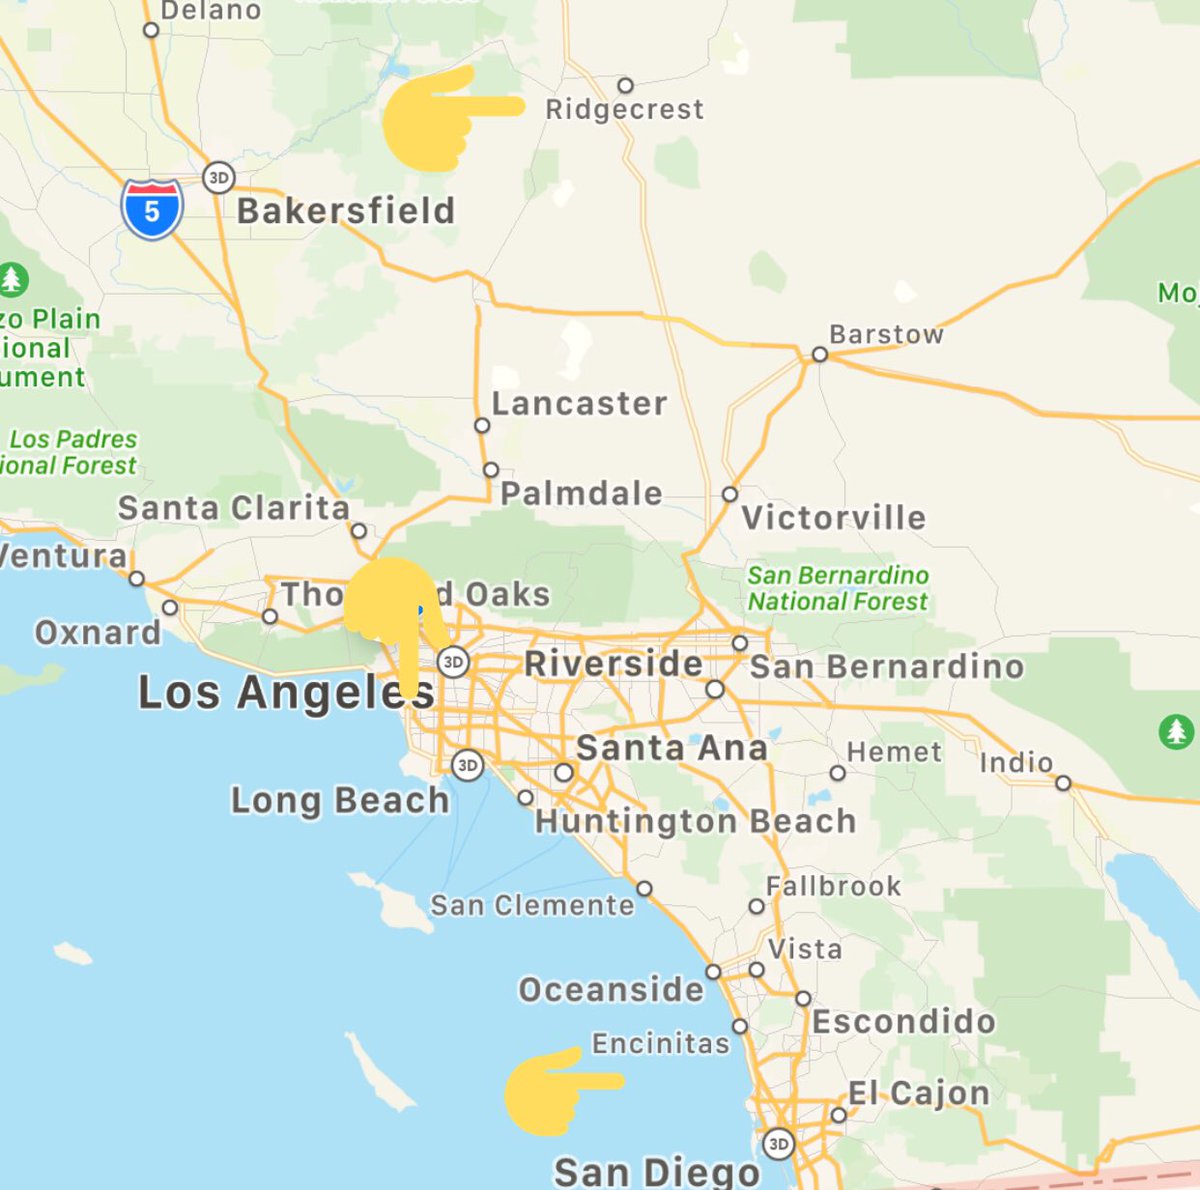 Gilbert 胡散臭い在米グローバル垢 ロサンゼルスの北 リッジクレストという街での今夏の地震による被害 距離 的にはロサンゼルス サンディエゴくらい離れていますね 地震 ロサンゼルス地震 Earfquake Earthquakeinla Earthquakela T